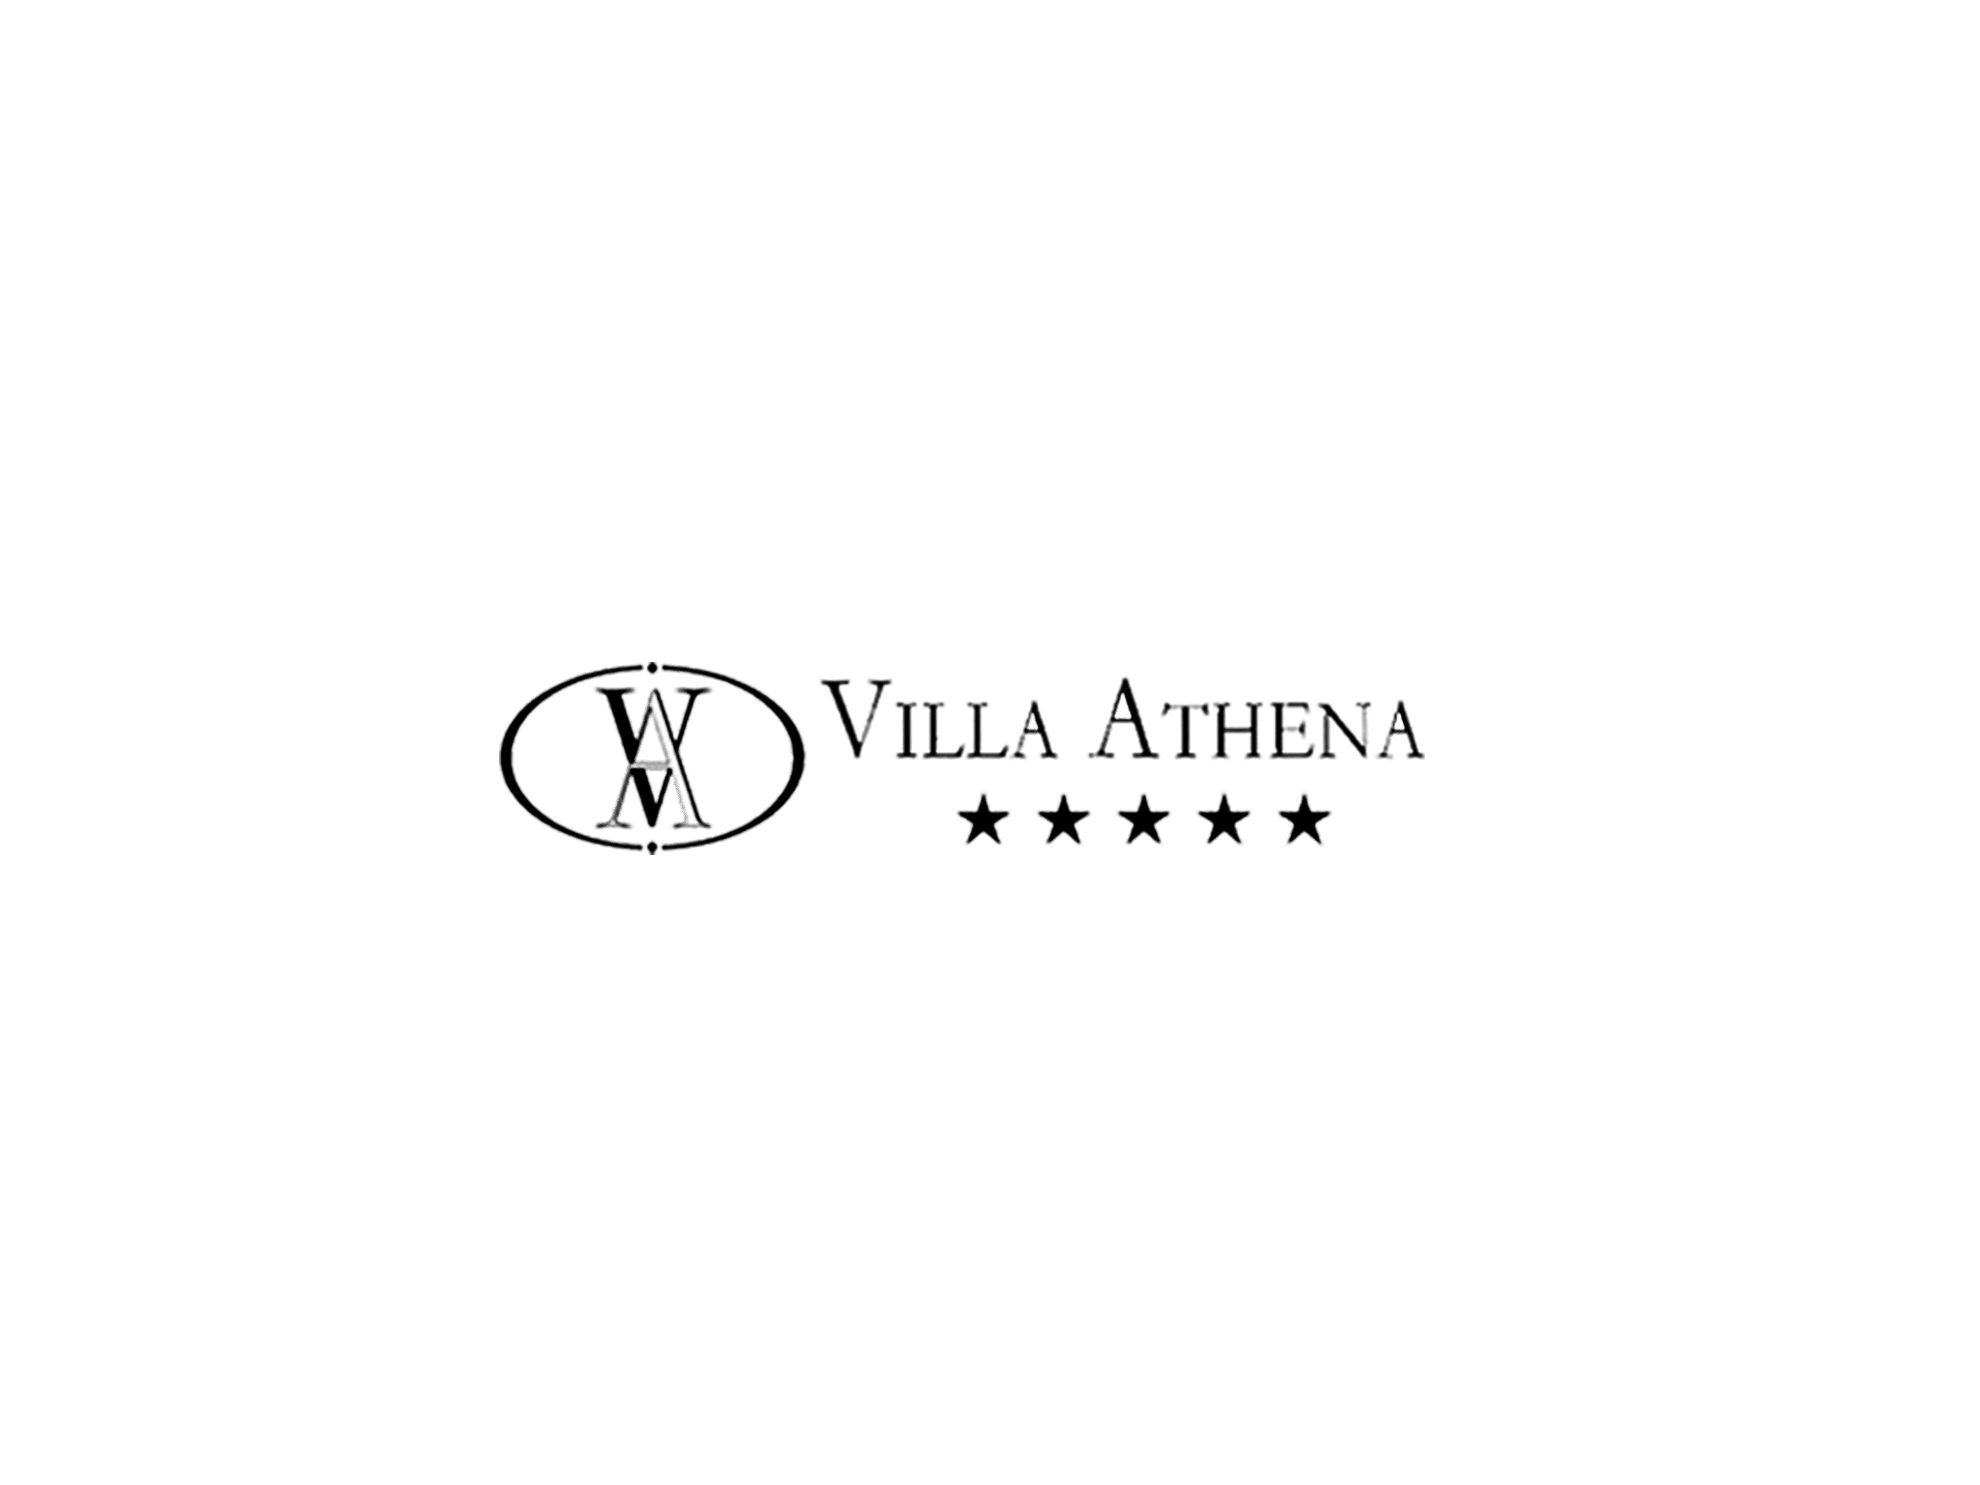 villa athena - peruzzi - agenzia di comunicazione Milano